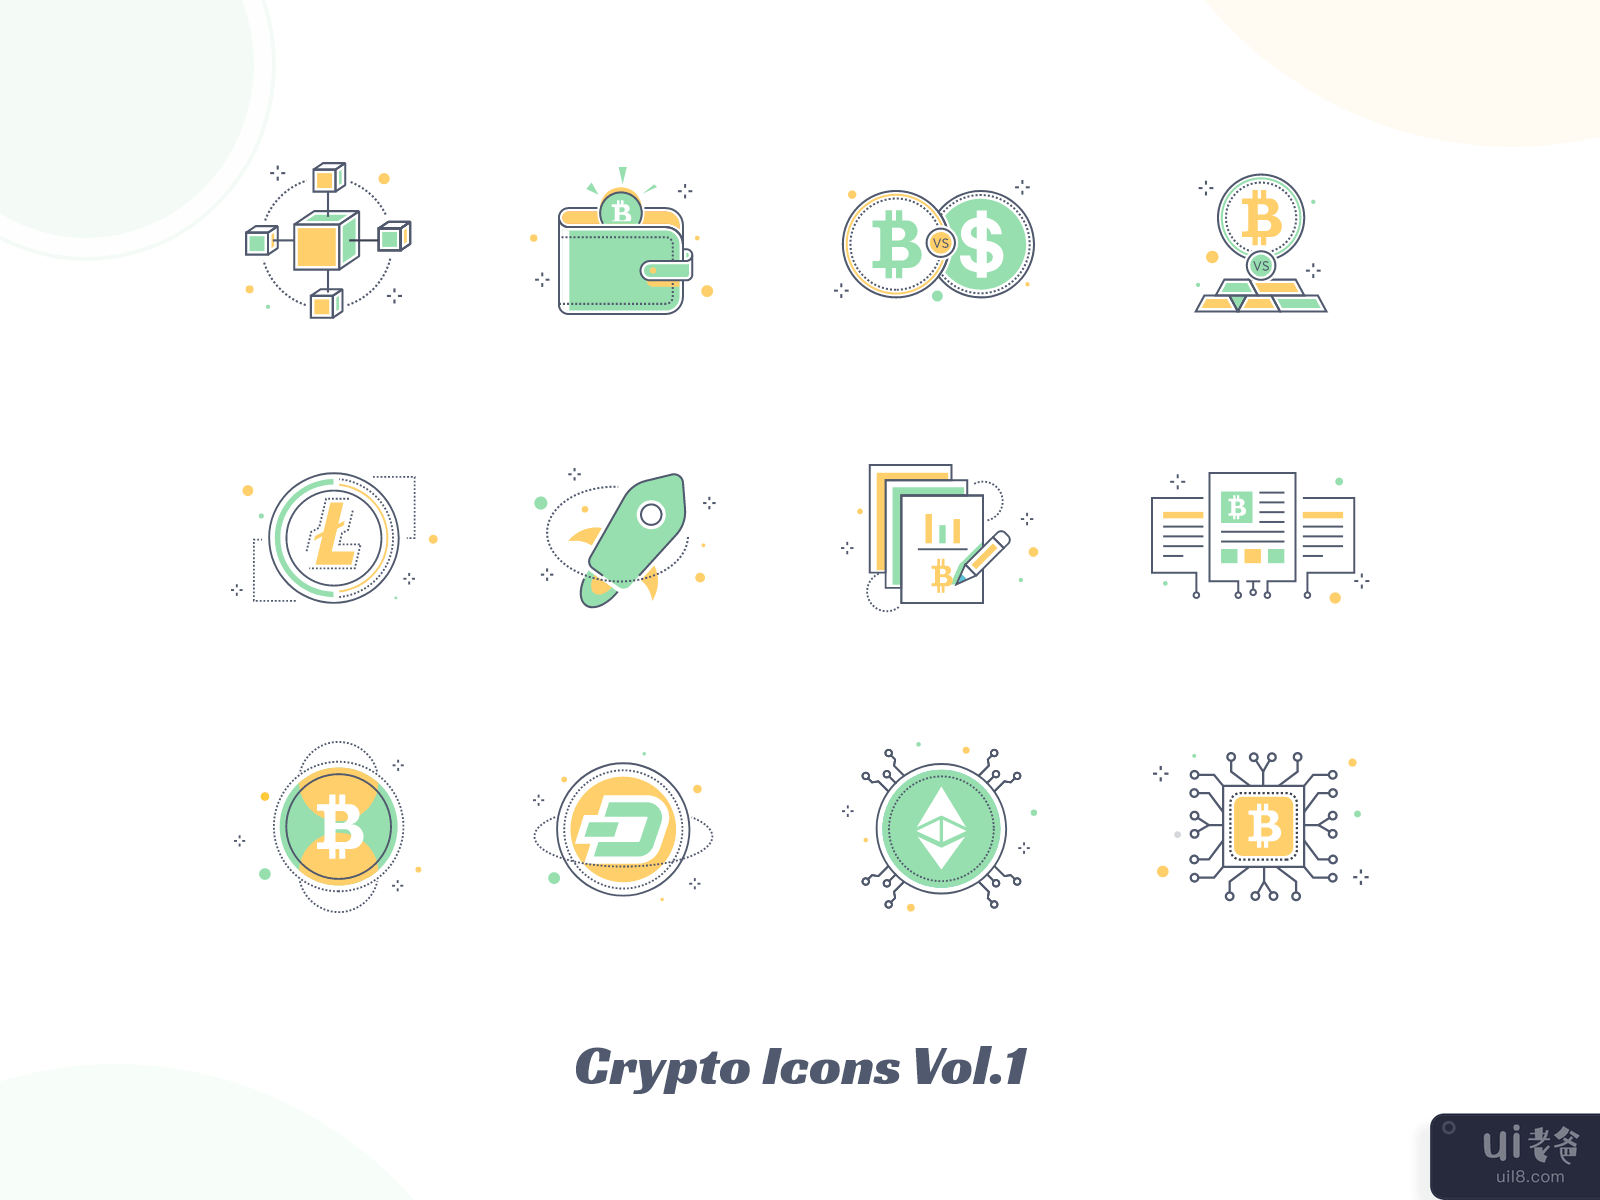 加密图标 Vol.1(Crypto Icons Vol.1)插图